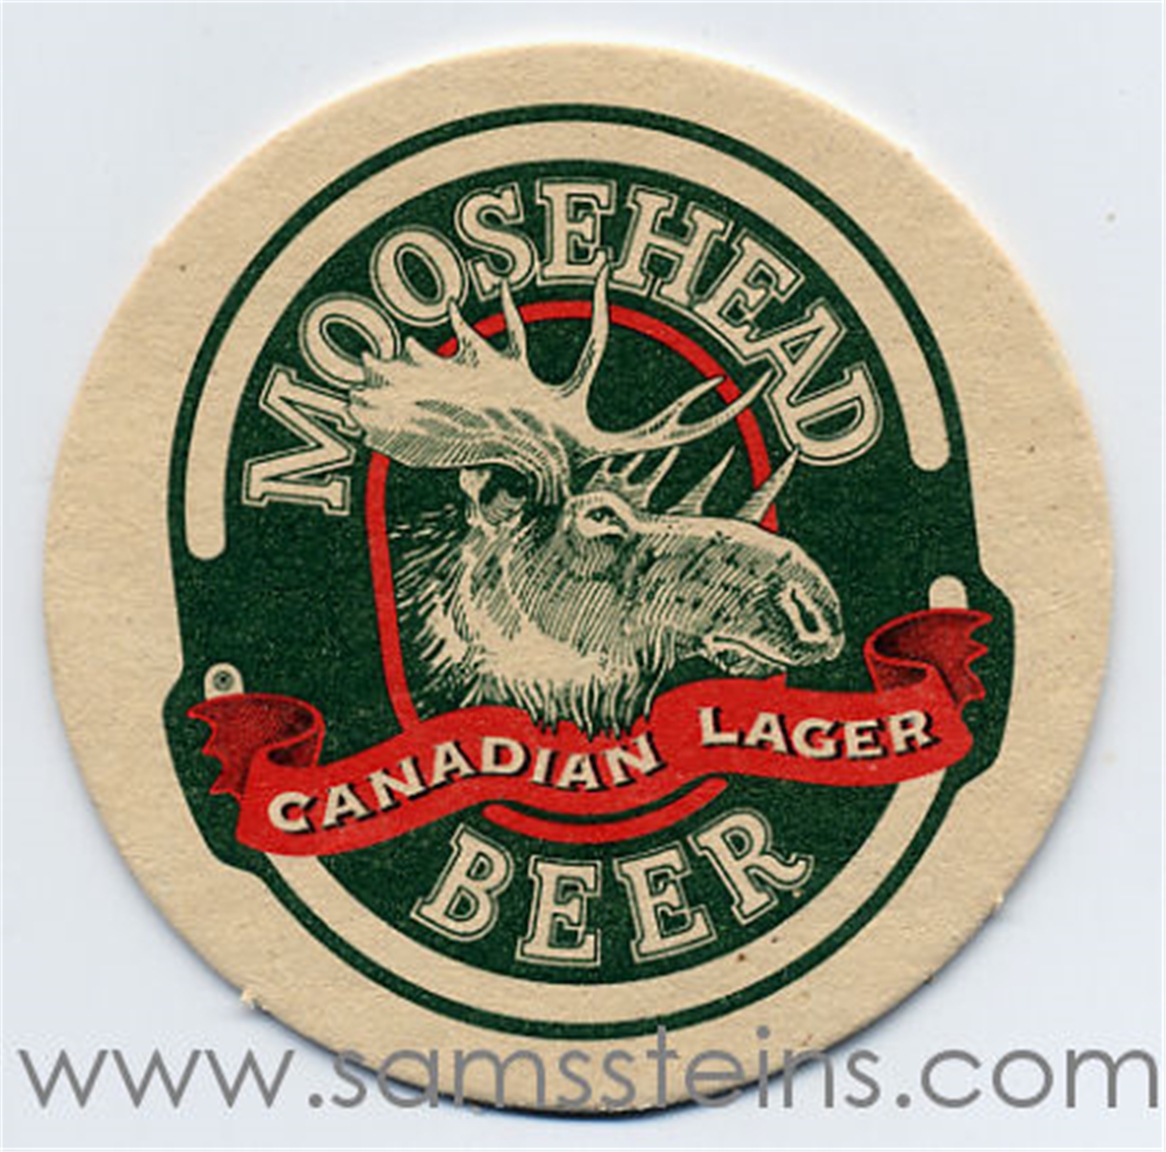 Moosehead Beer Coaster